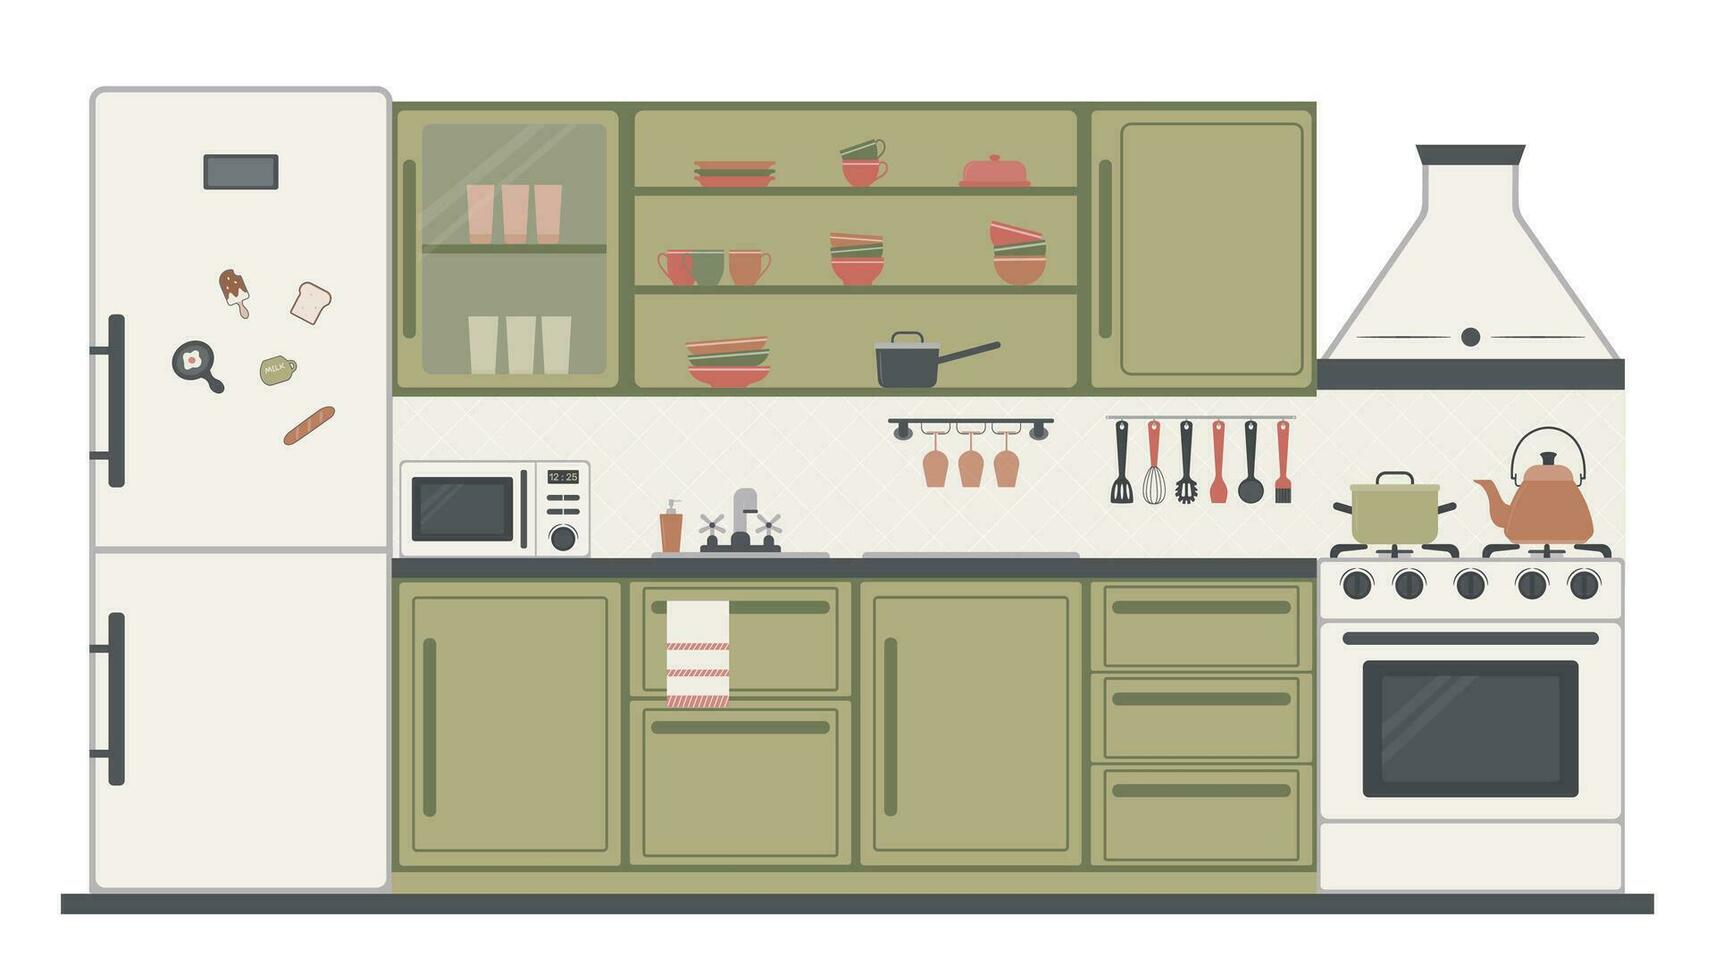 cocina interior diseño con muebles, accesorios y platos. cocina armarios, gas cocina, microonda, refrigerador con imanes, extractor capucha. vector ilustración en el plano estilo.